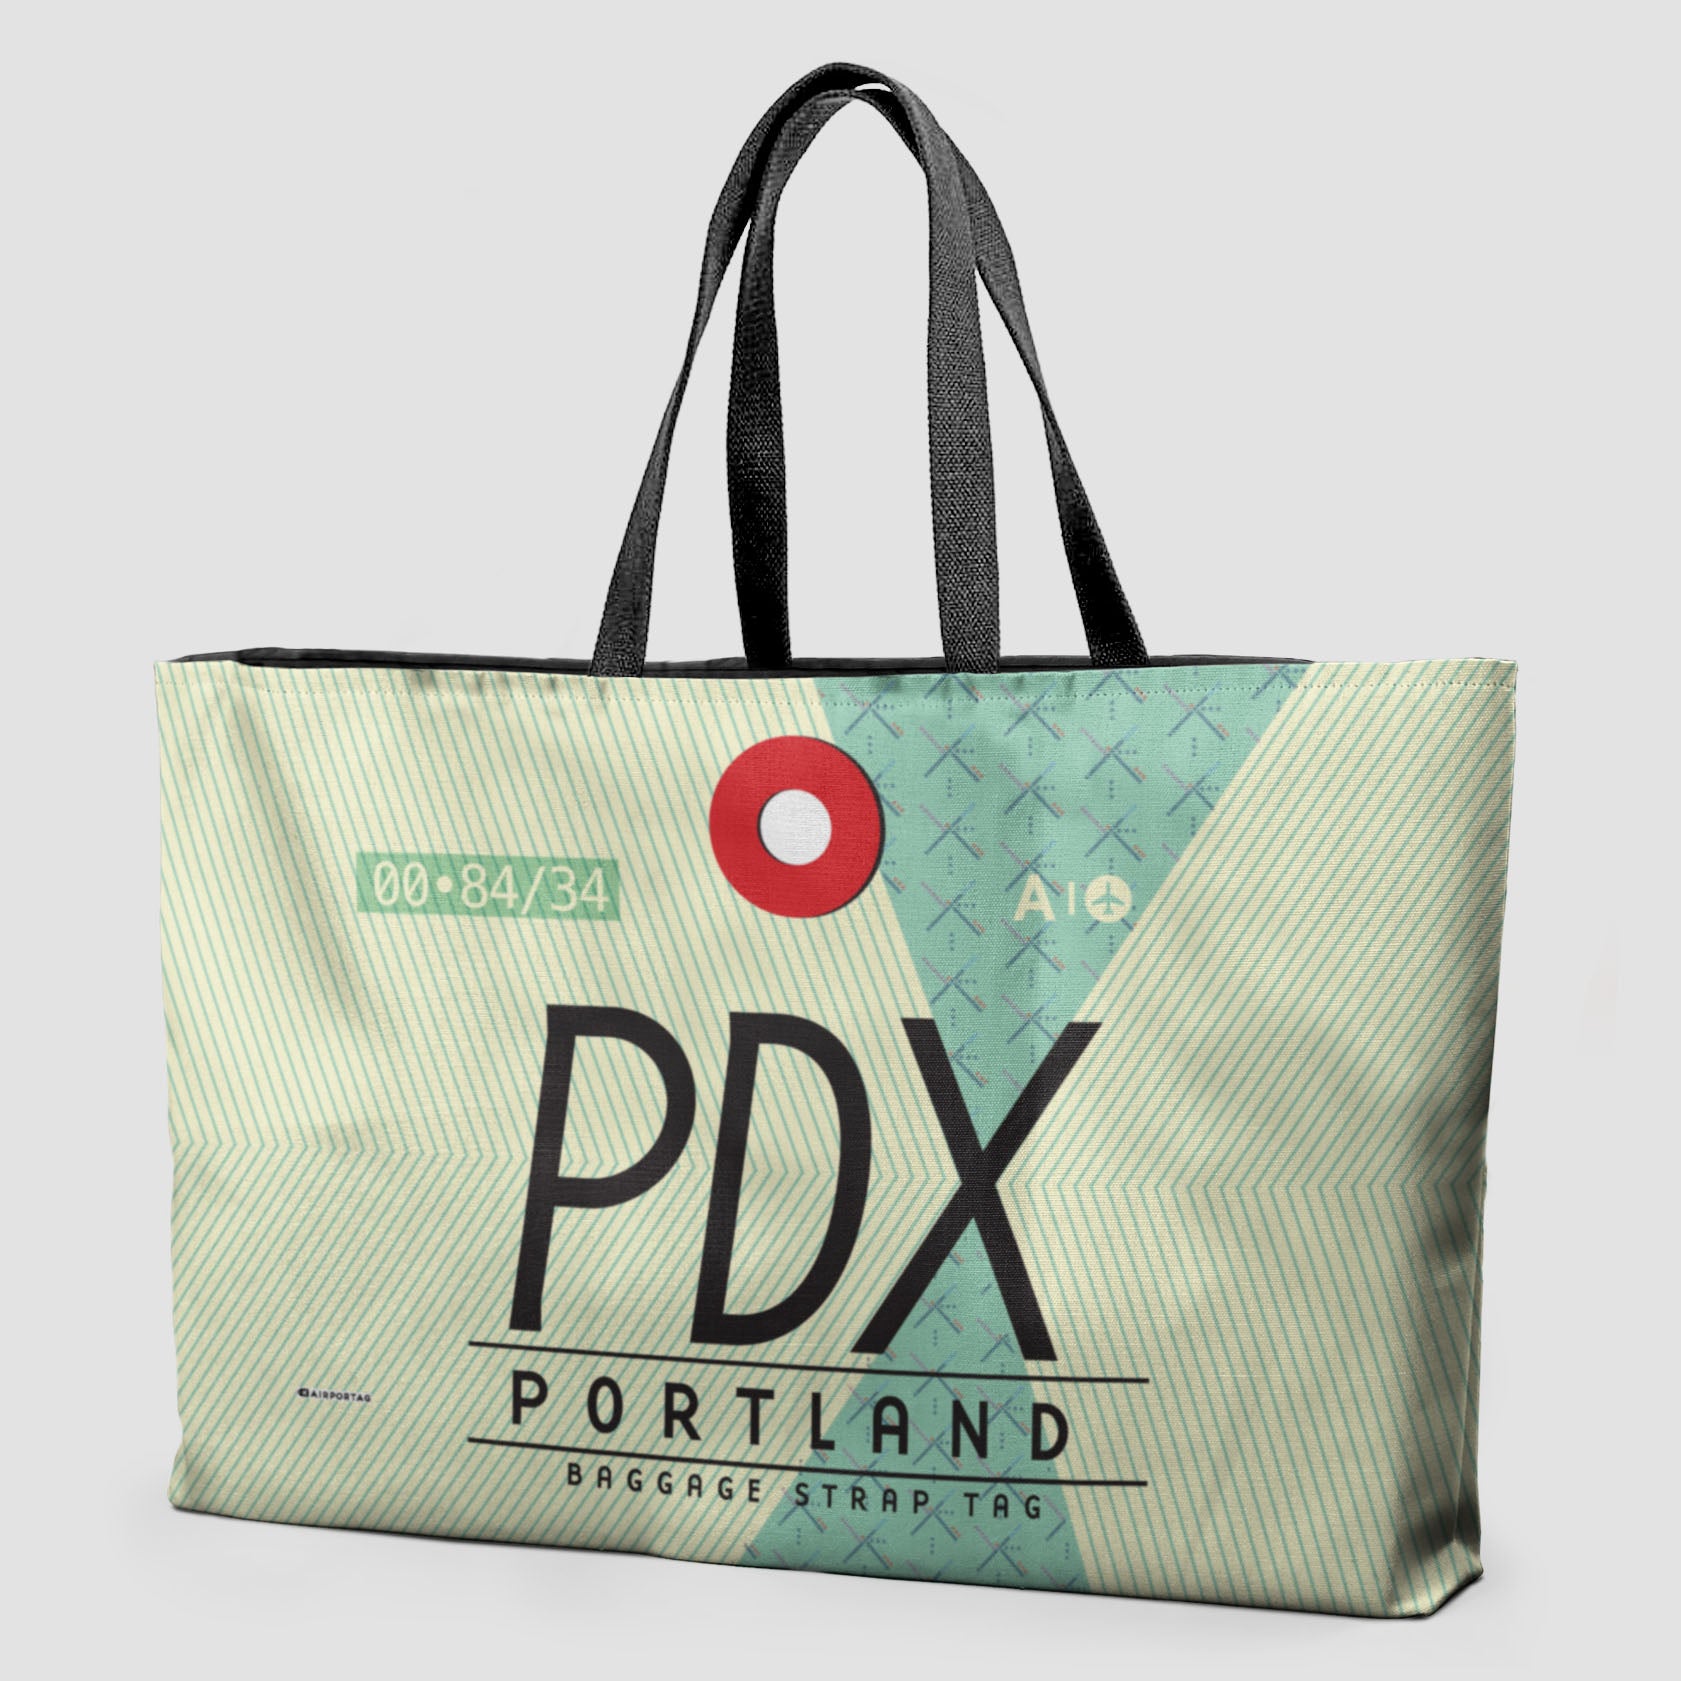 PDX - Weekender Bag - Airportag